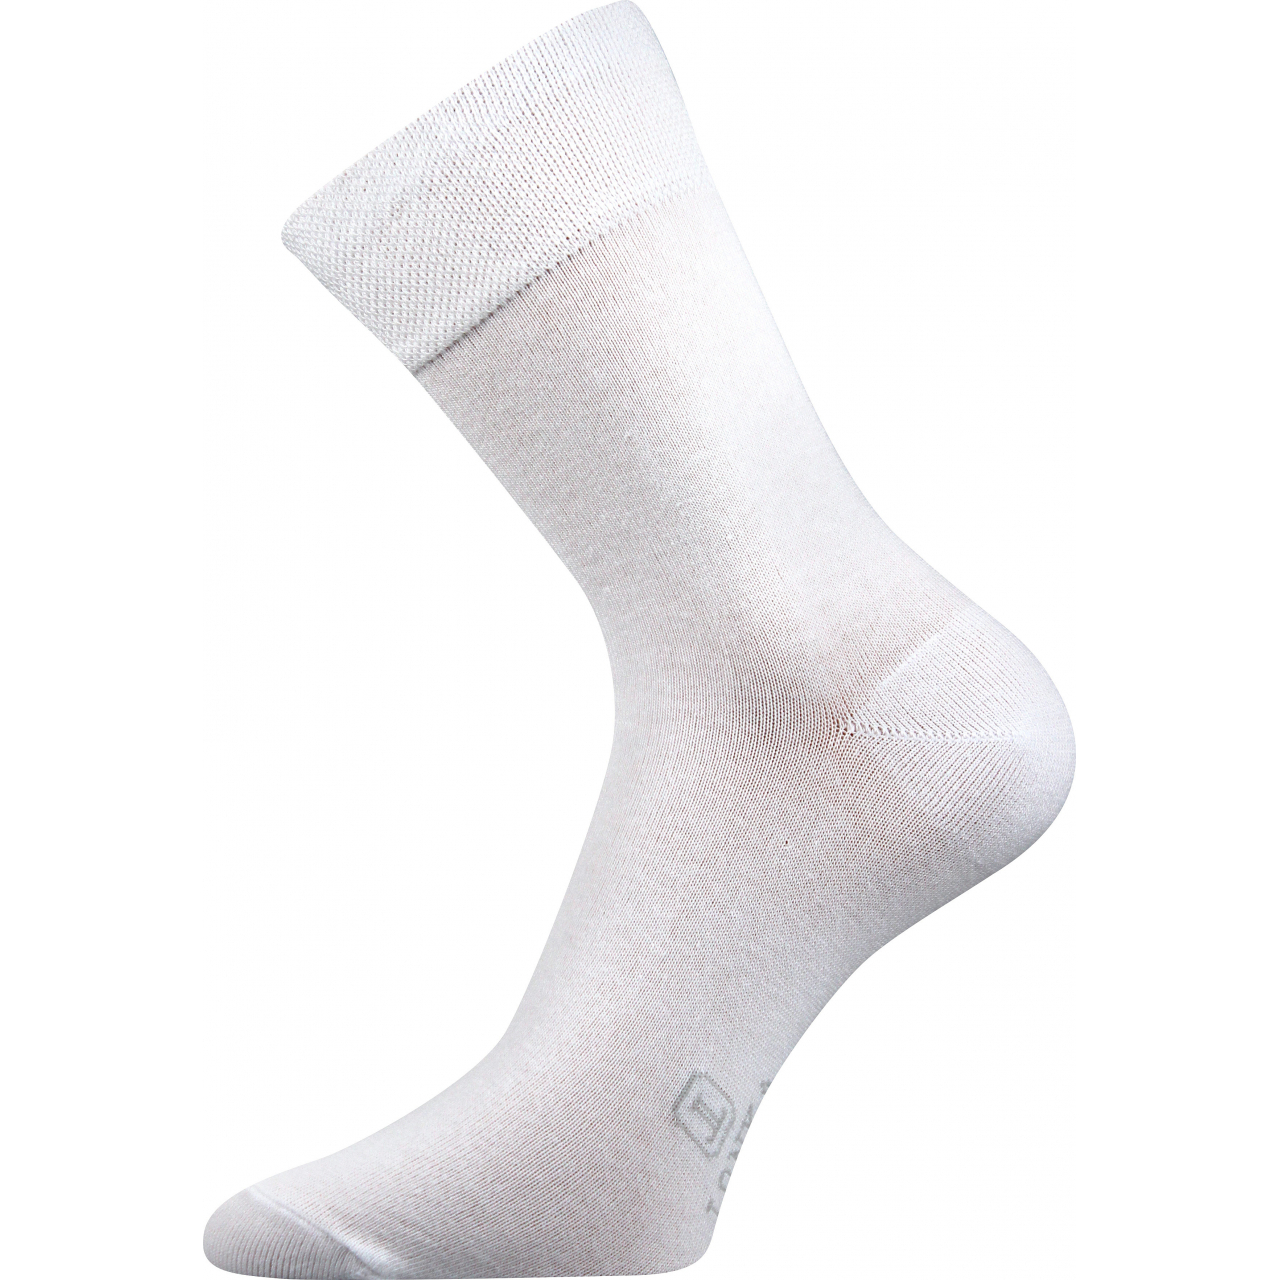 Ponožky pánské Lonka Dasilver - bílé, 39-42